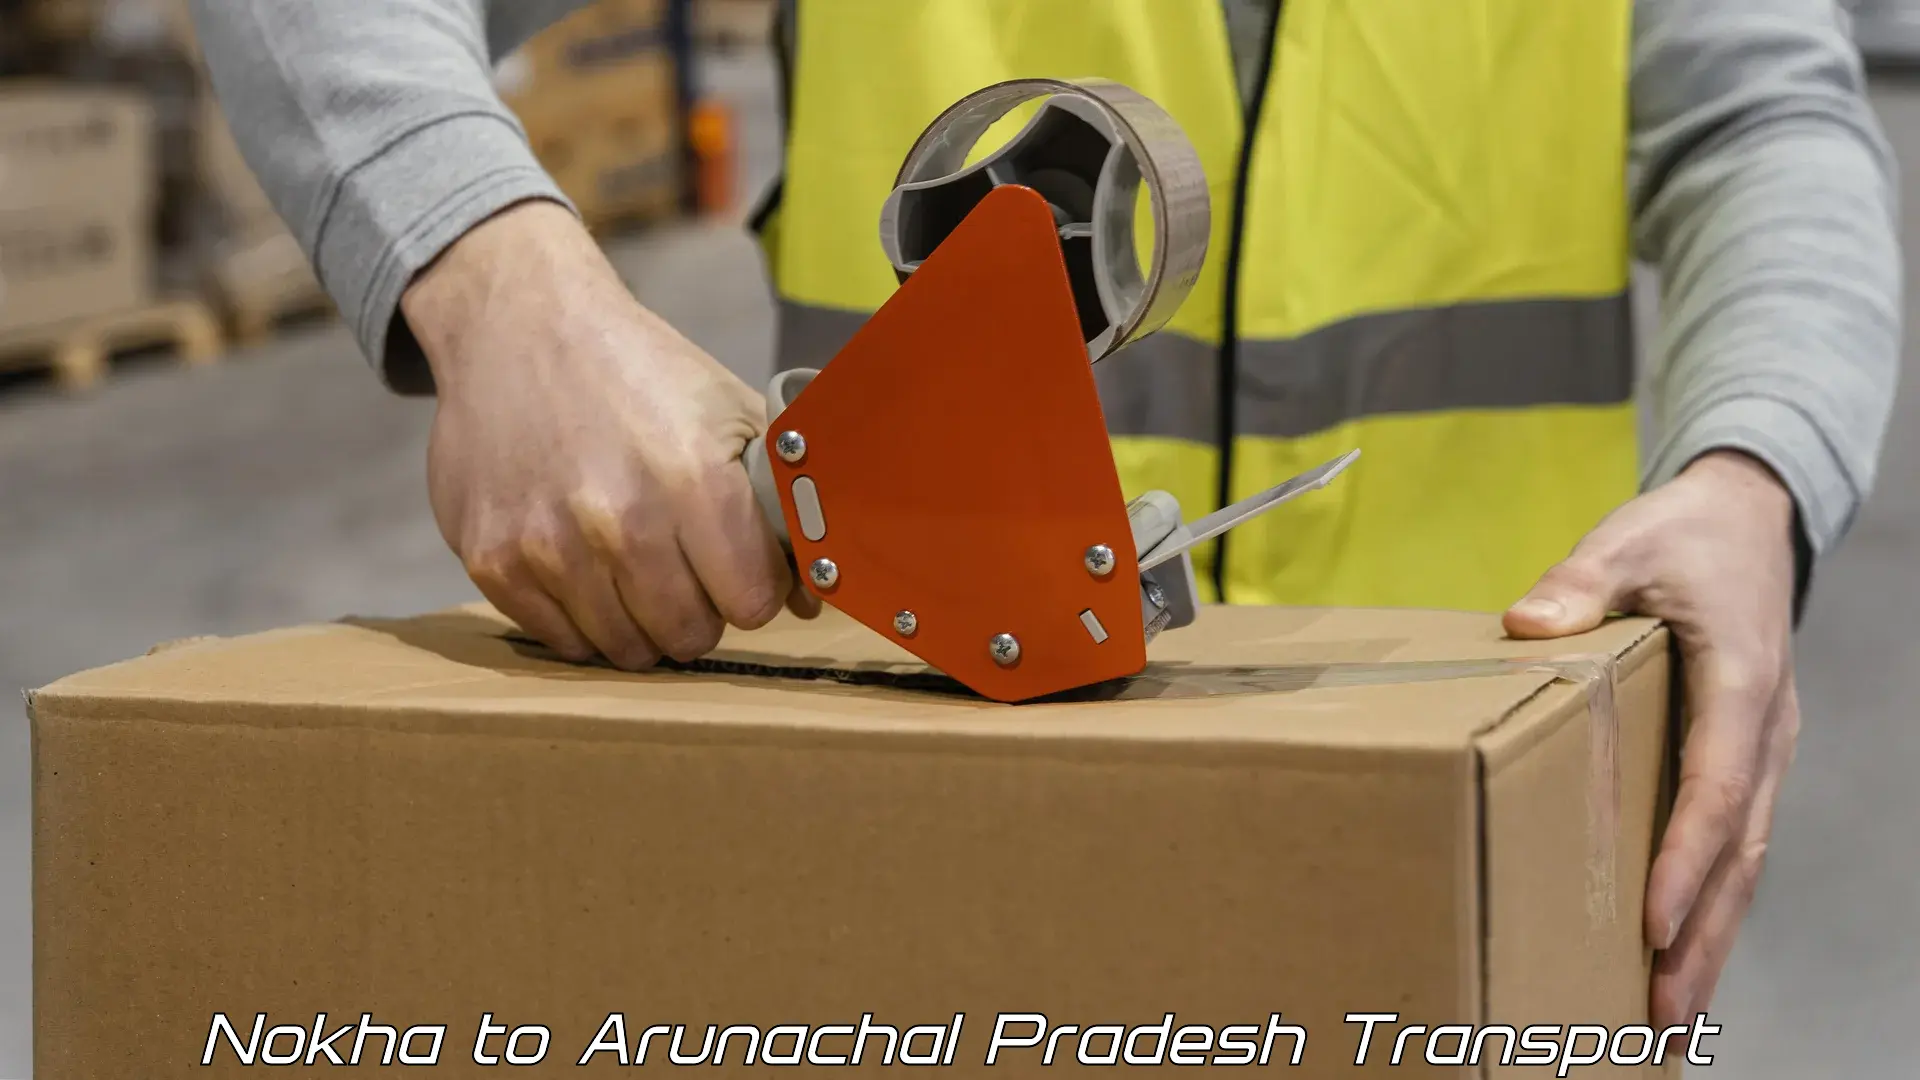 Air freight transport services Nokha to Arunachal Pradesh